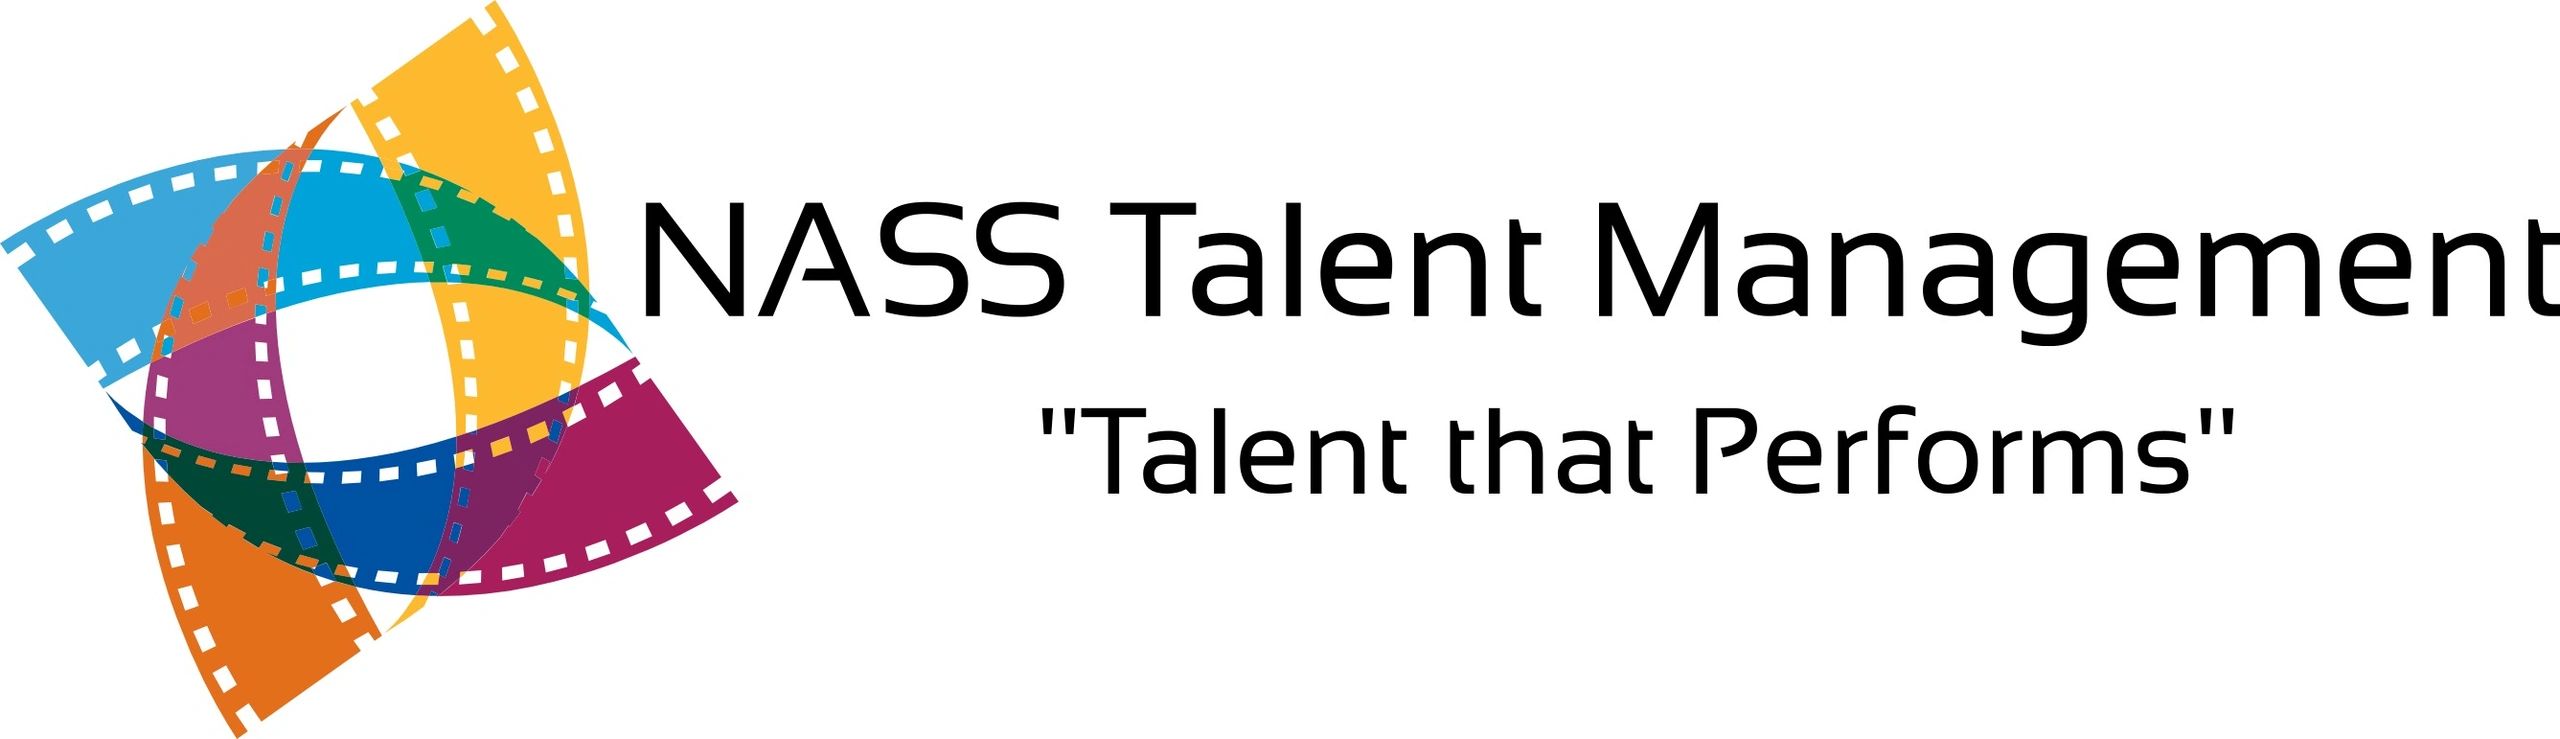 NASS Talent Management